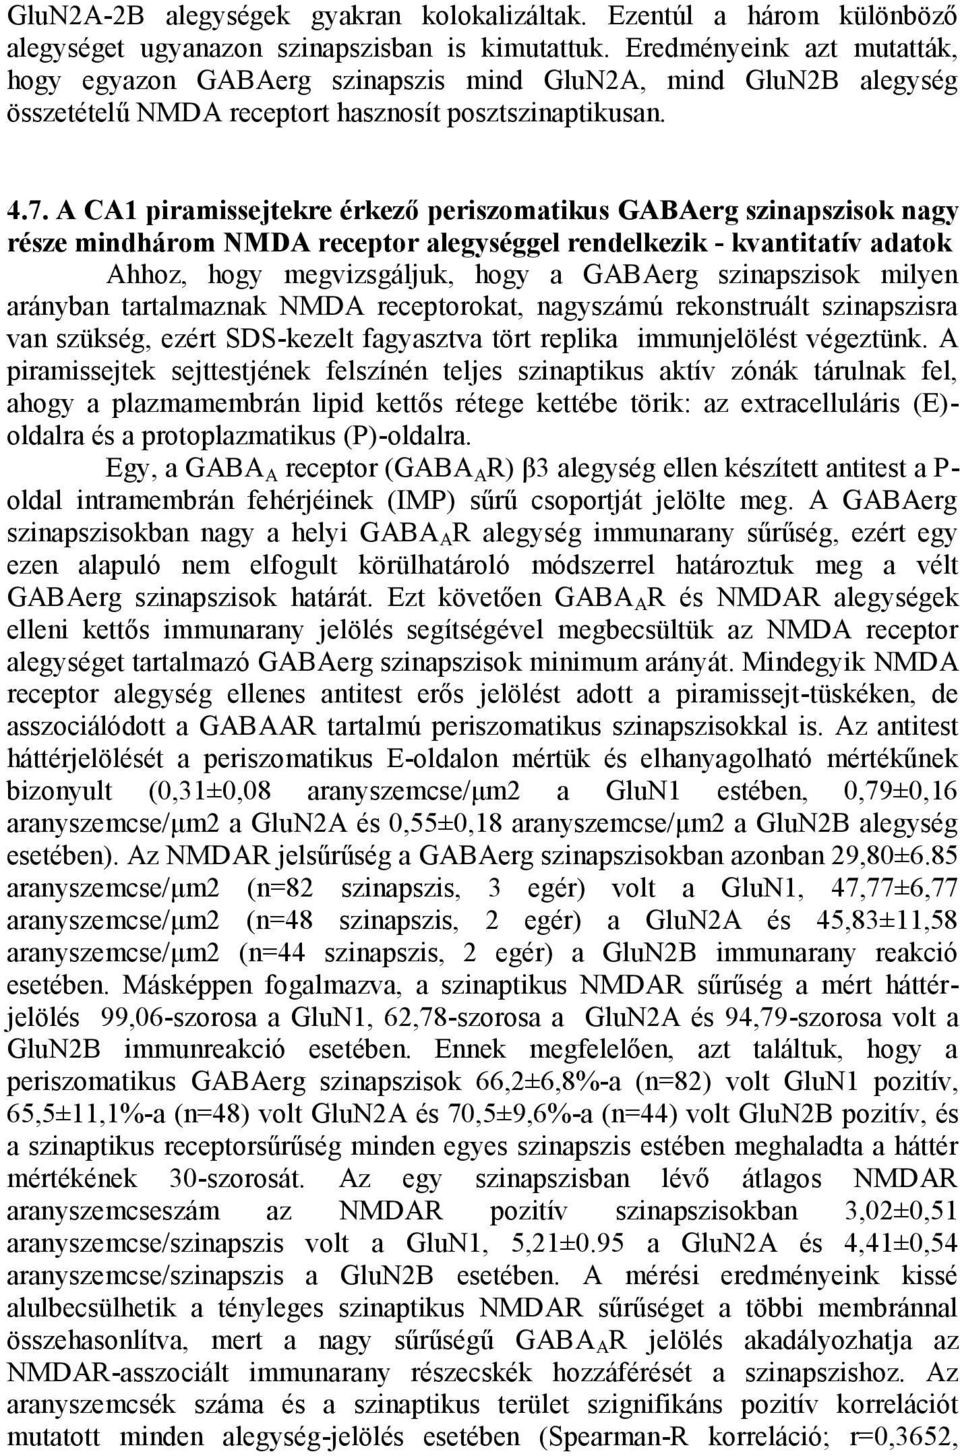 A CA1 piramissejtekre érkező periszomatikus GABAerg szinapszisok nagy része mindhárom NMDA receptor alegységgel rendelkezik - kvantitatív adatok Ahhoz, hogy megvizsgáljuk, hogy a GABAerg szinapszisok